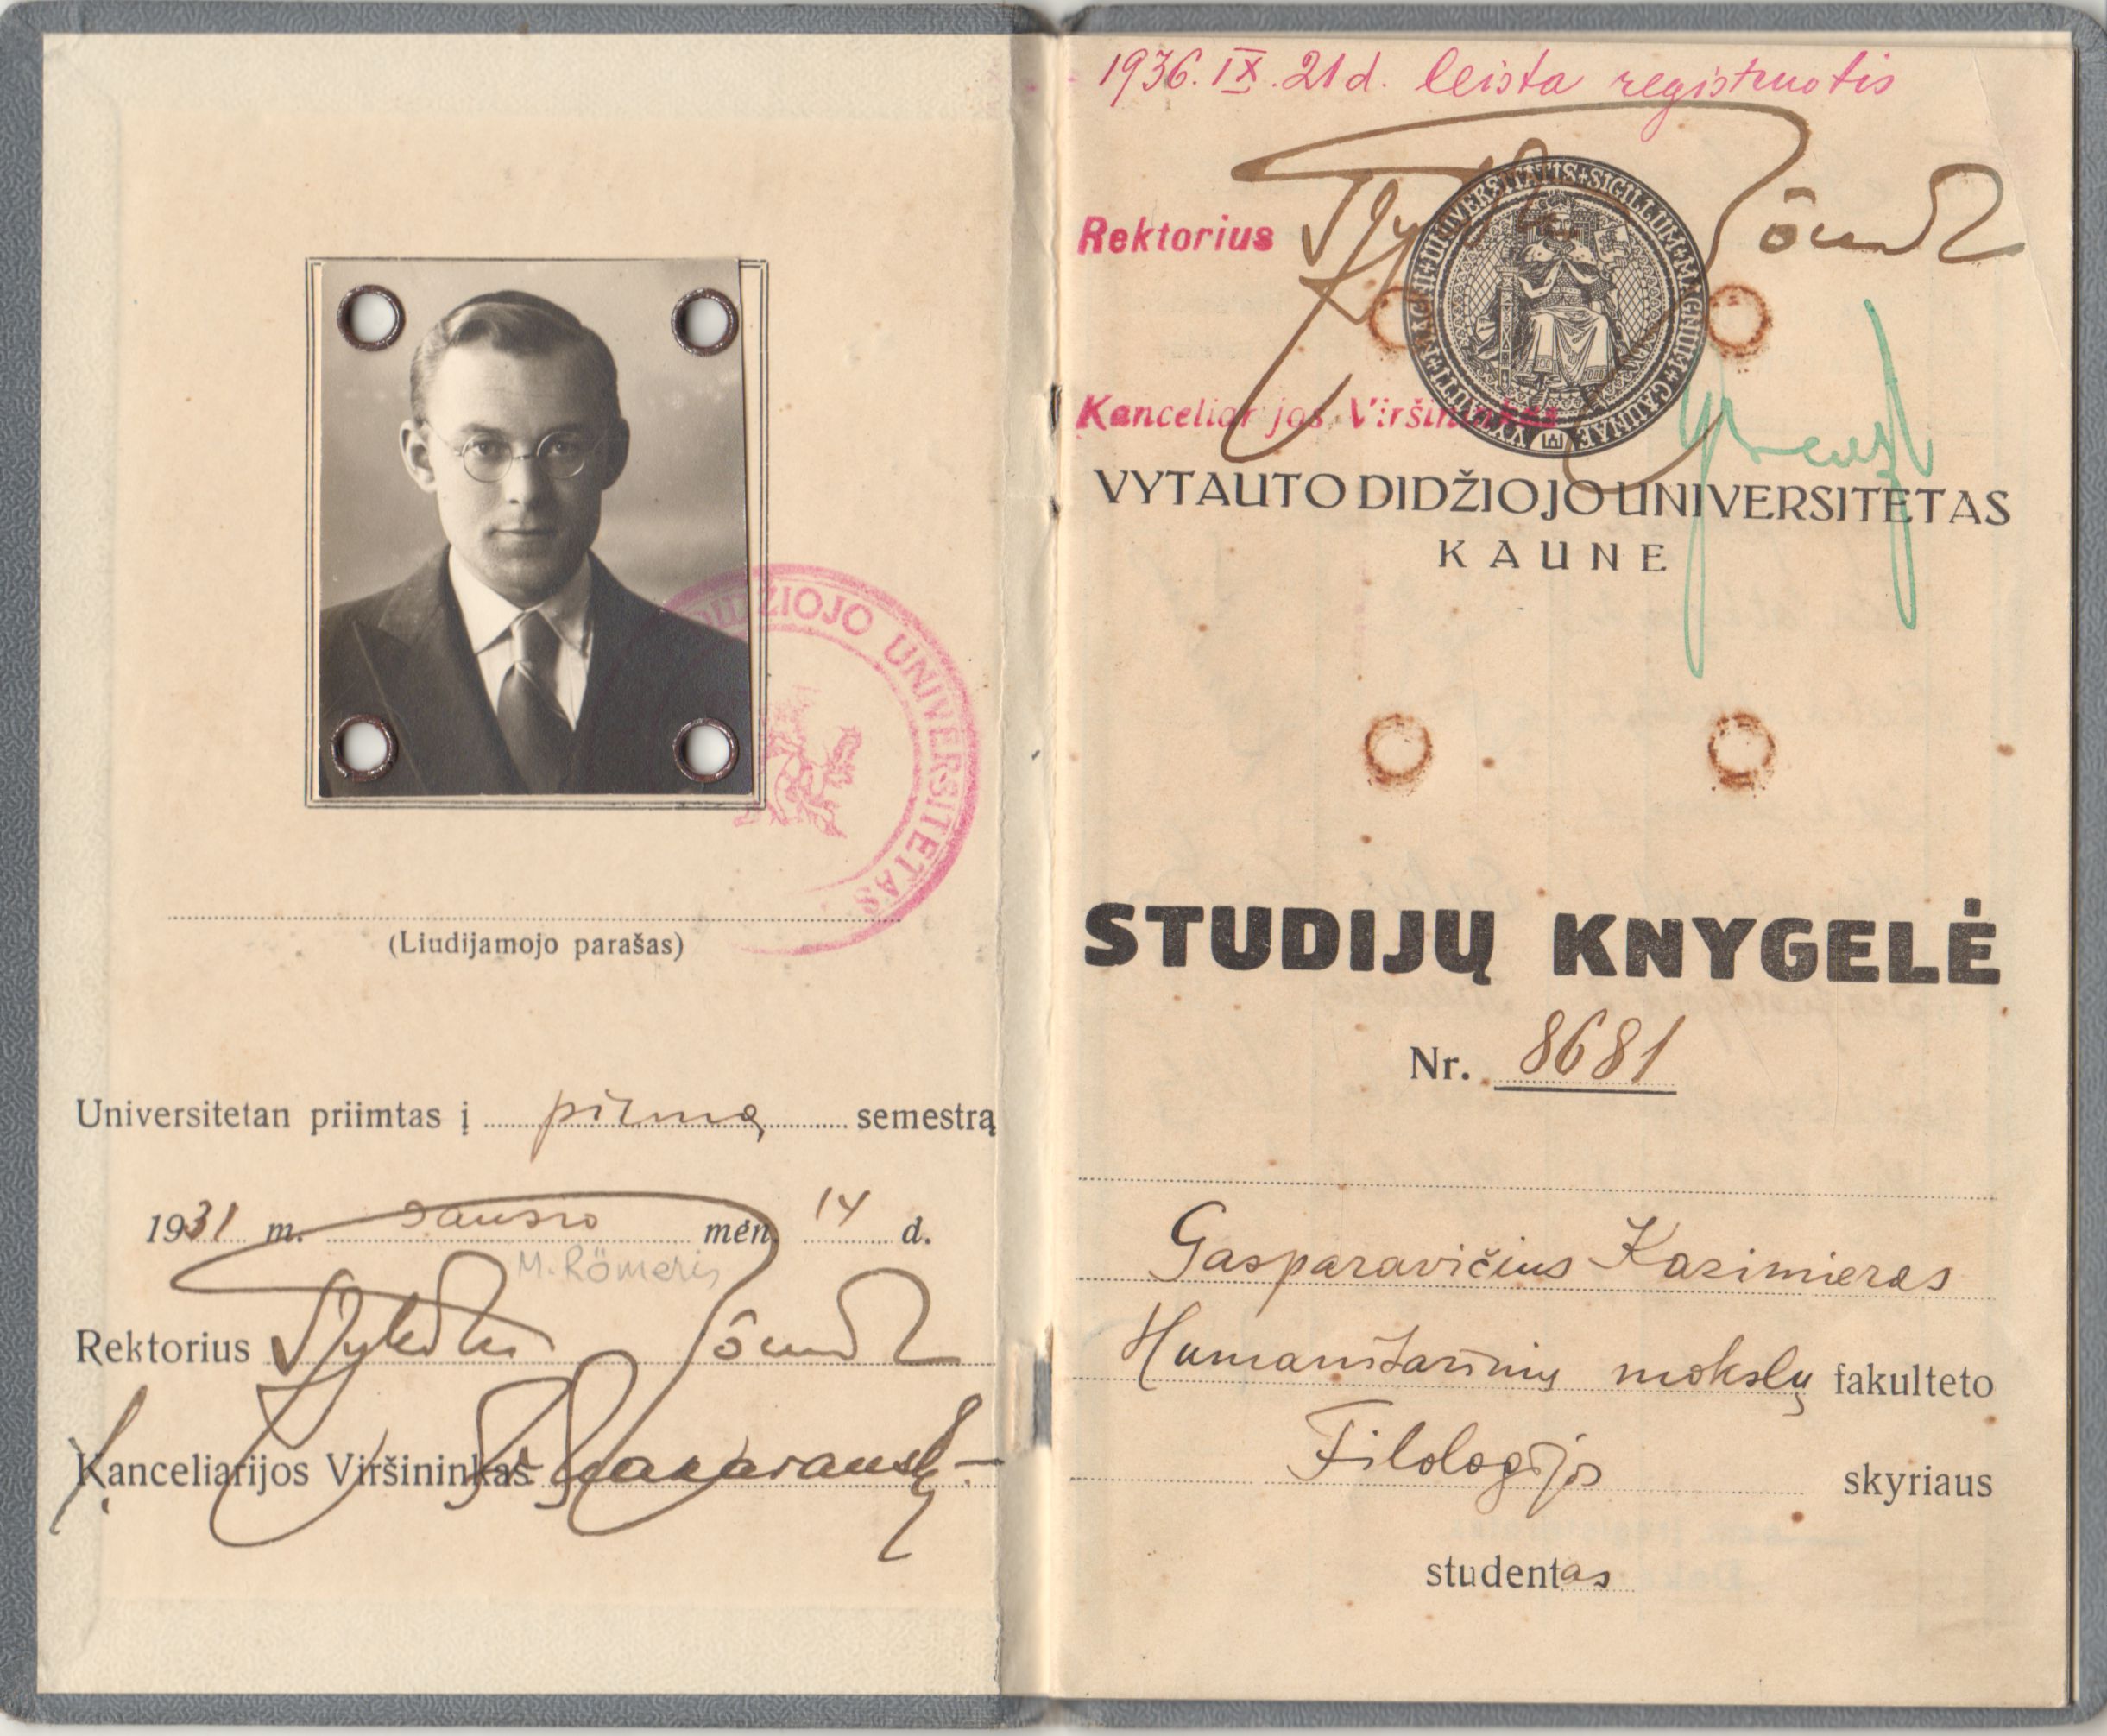 VDU Humanitarinių mokslų fakulteto, Filosofijos skyriaus studento Kazimiero Gasparavičiaus studijų knygelė. 1931 m. MLLM 75887